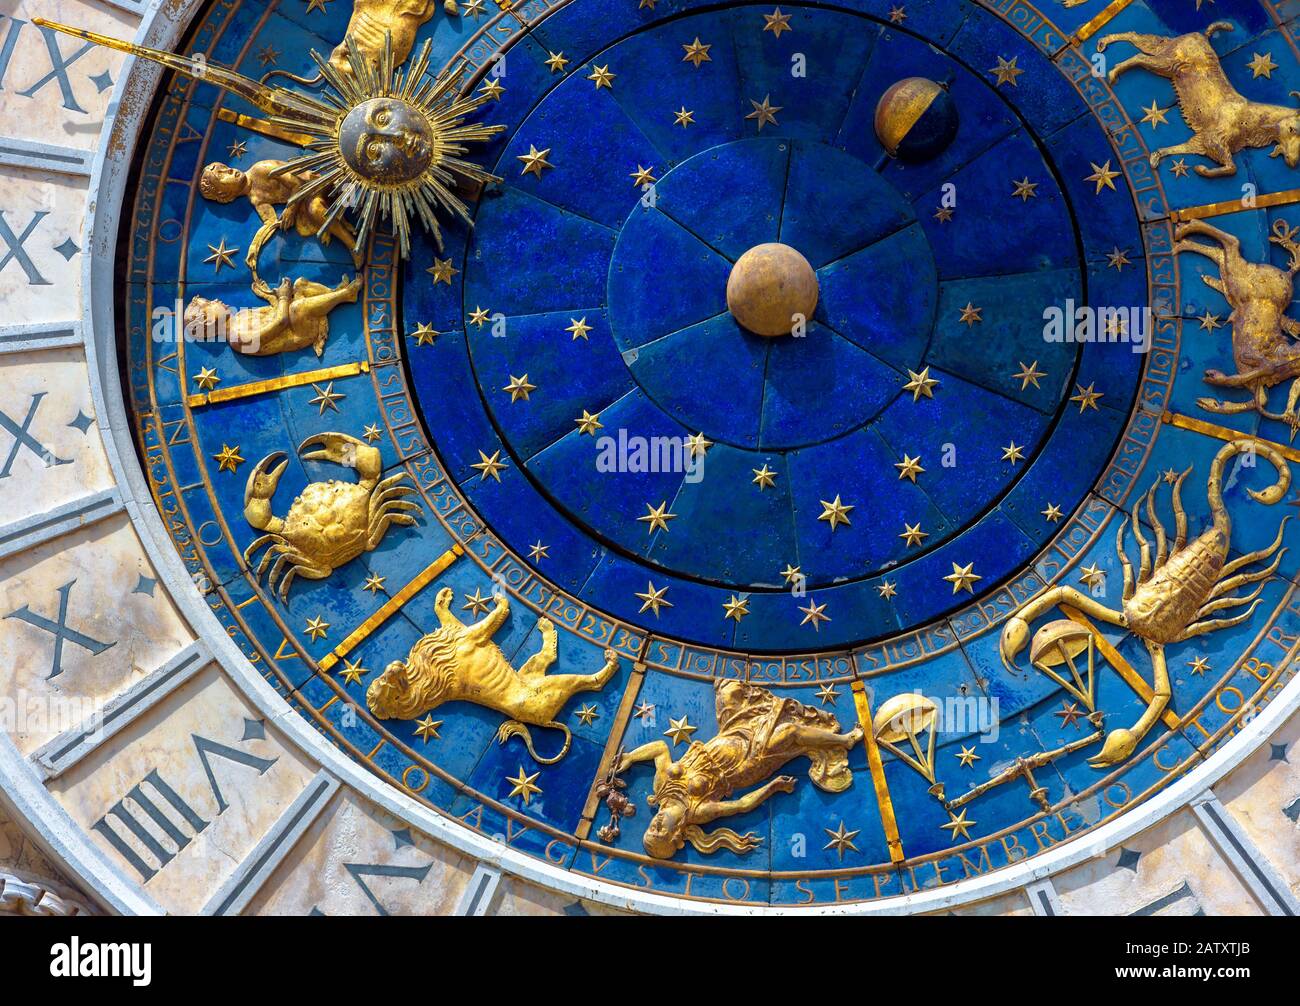 Signes astrologiques sur l'horloge ancienne Torre dell'Orologio, Venise, Italie. Roue et constellations du zodiaque médiéval. Symboles dorés sur le cercle des étoiles. Conce Banque D'Images